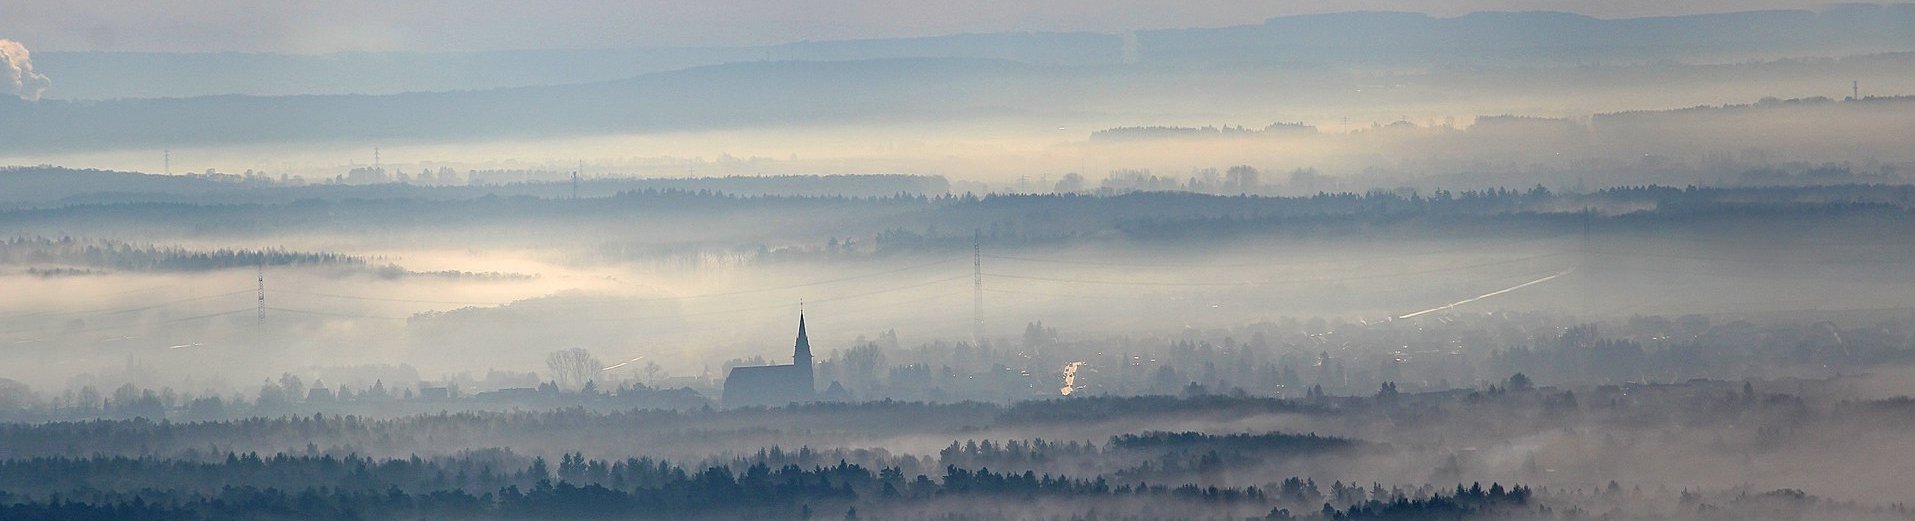 Blick über eine Landschaft, welche teilweise von Nebel überdeckt ist. Eine Kirchenspitze ragt aus dem Nebel.